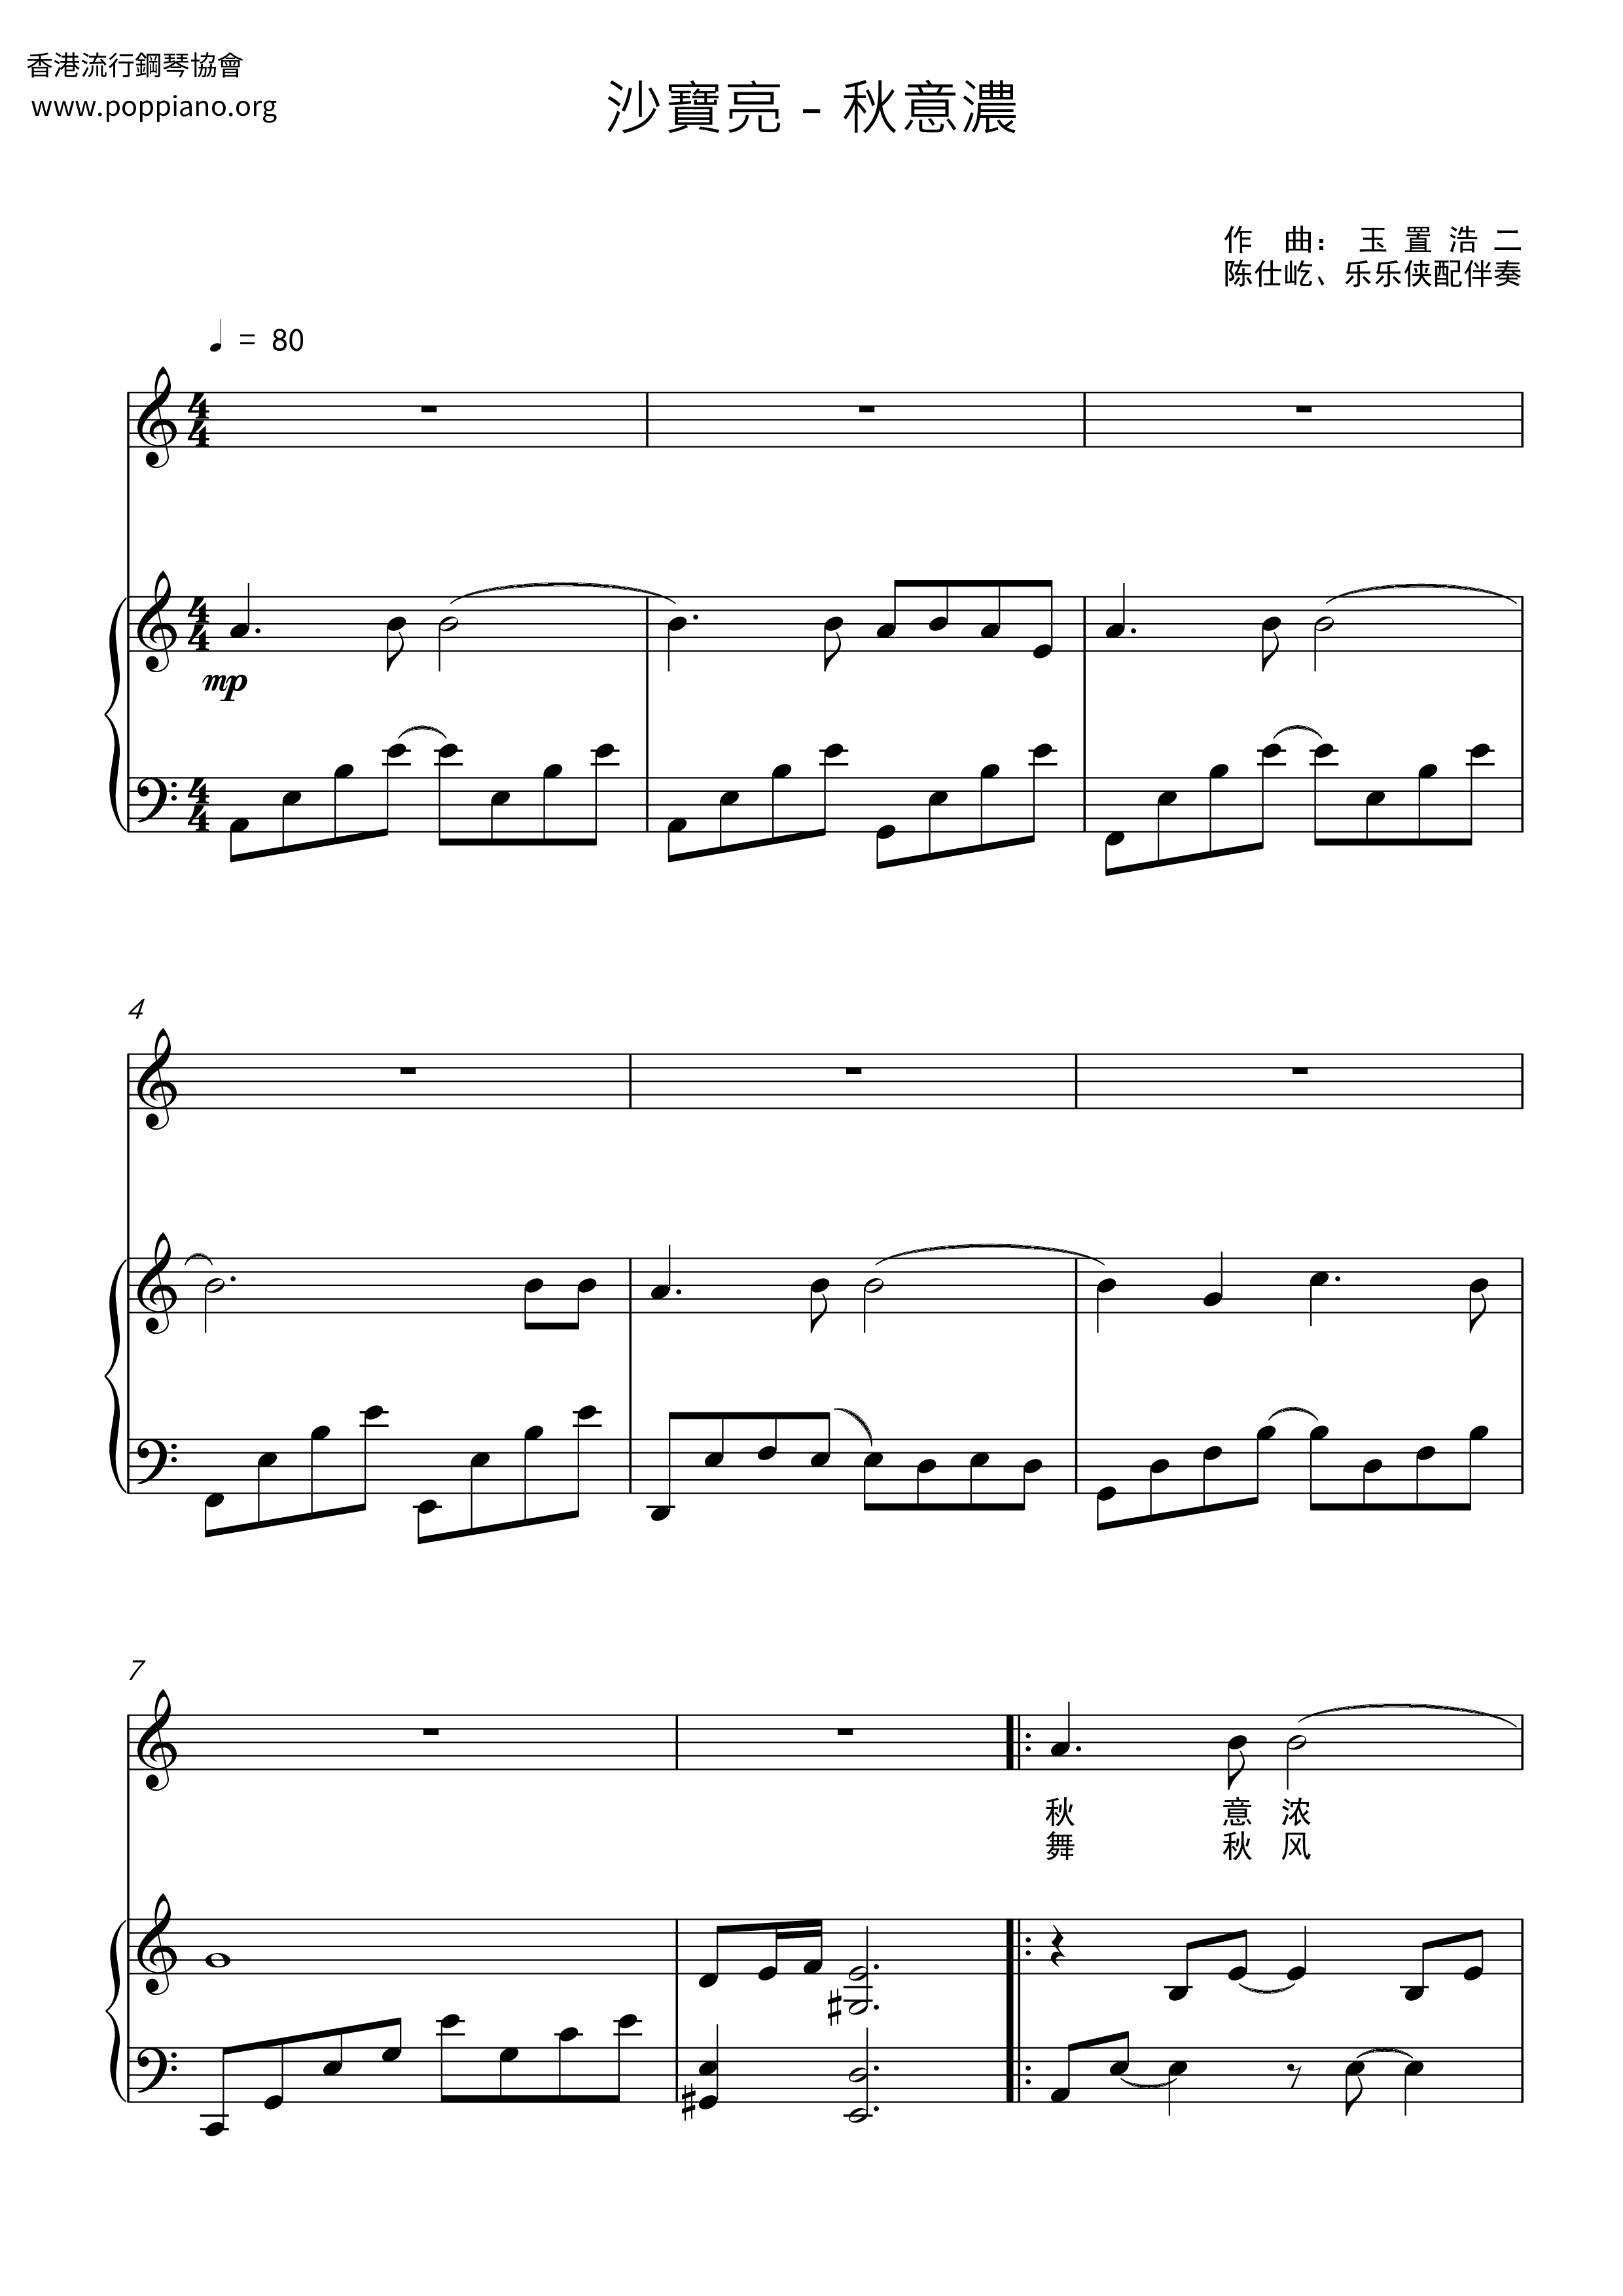 Li Xianglan Score